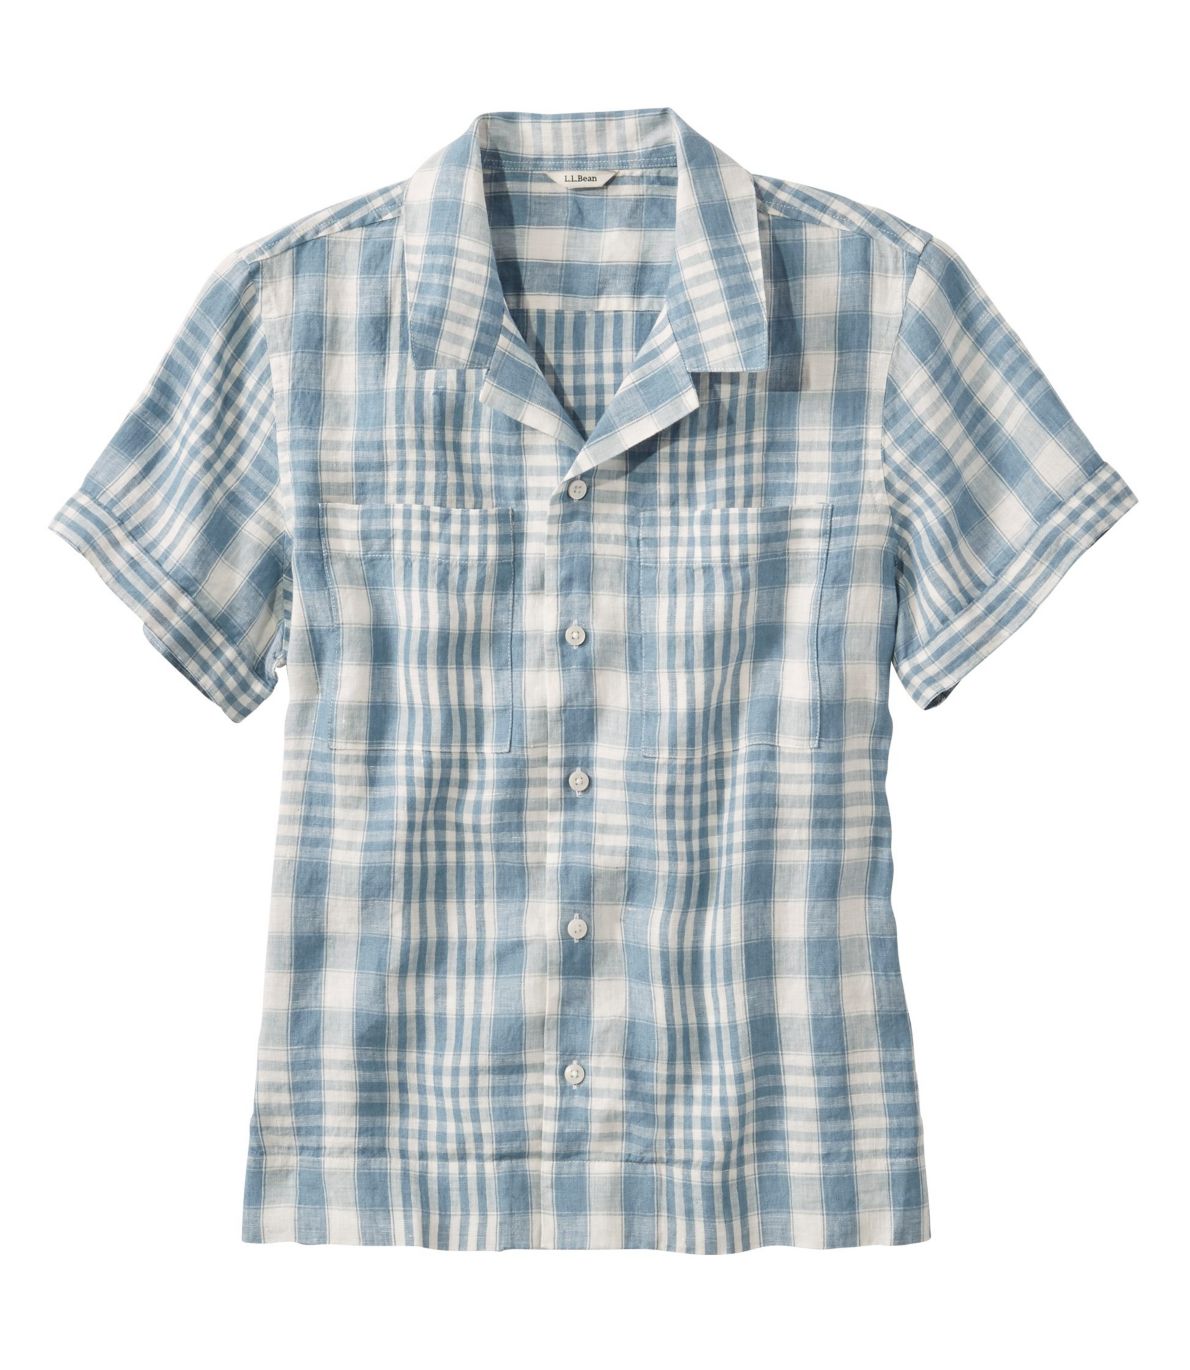 Women's Premium Washable Linen Camp Shirt, Short-Sleeve Plaid